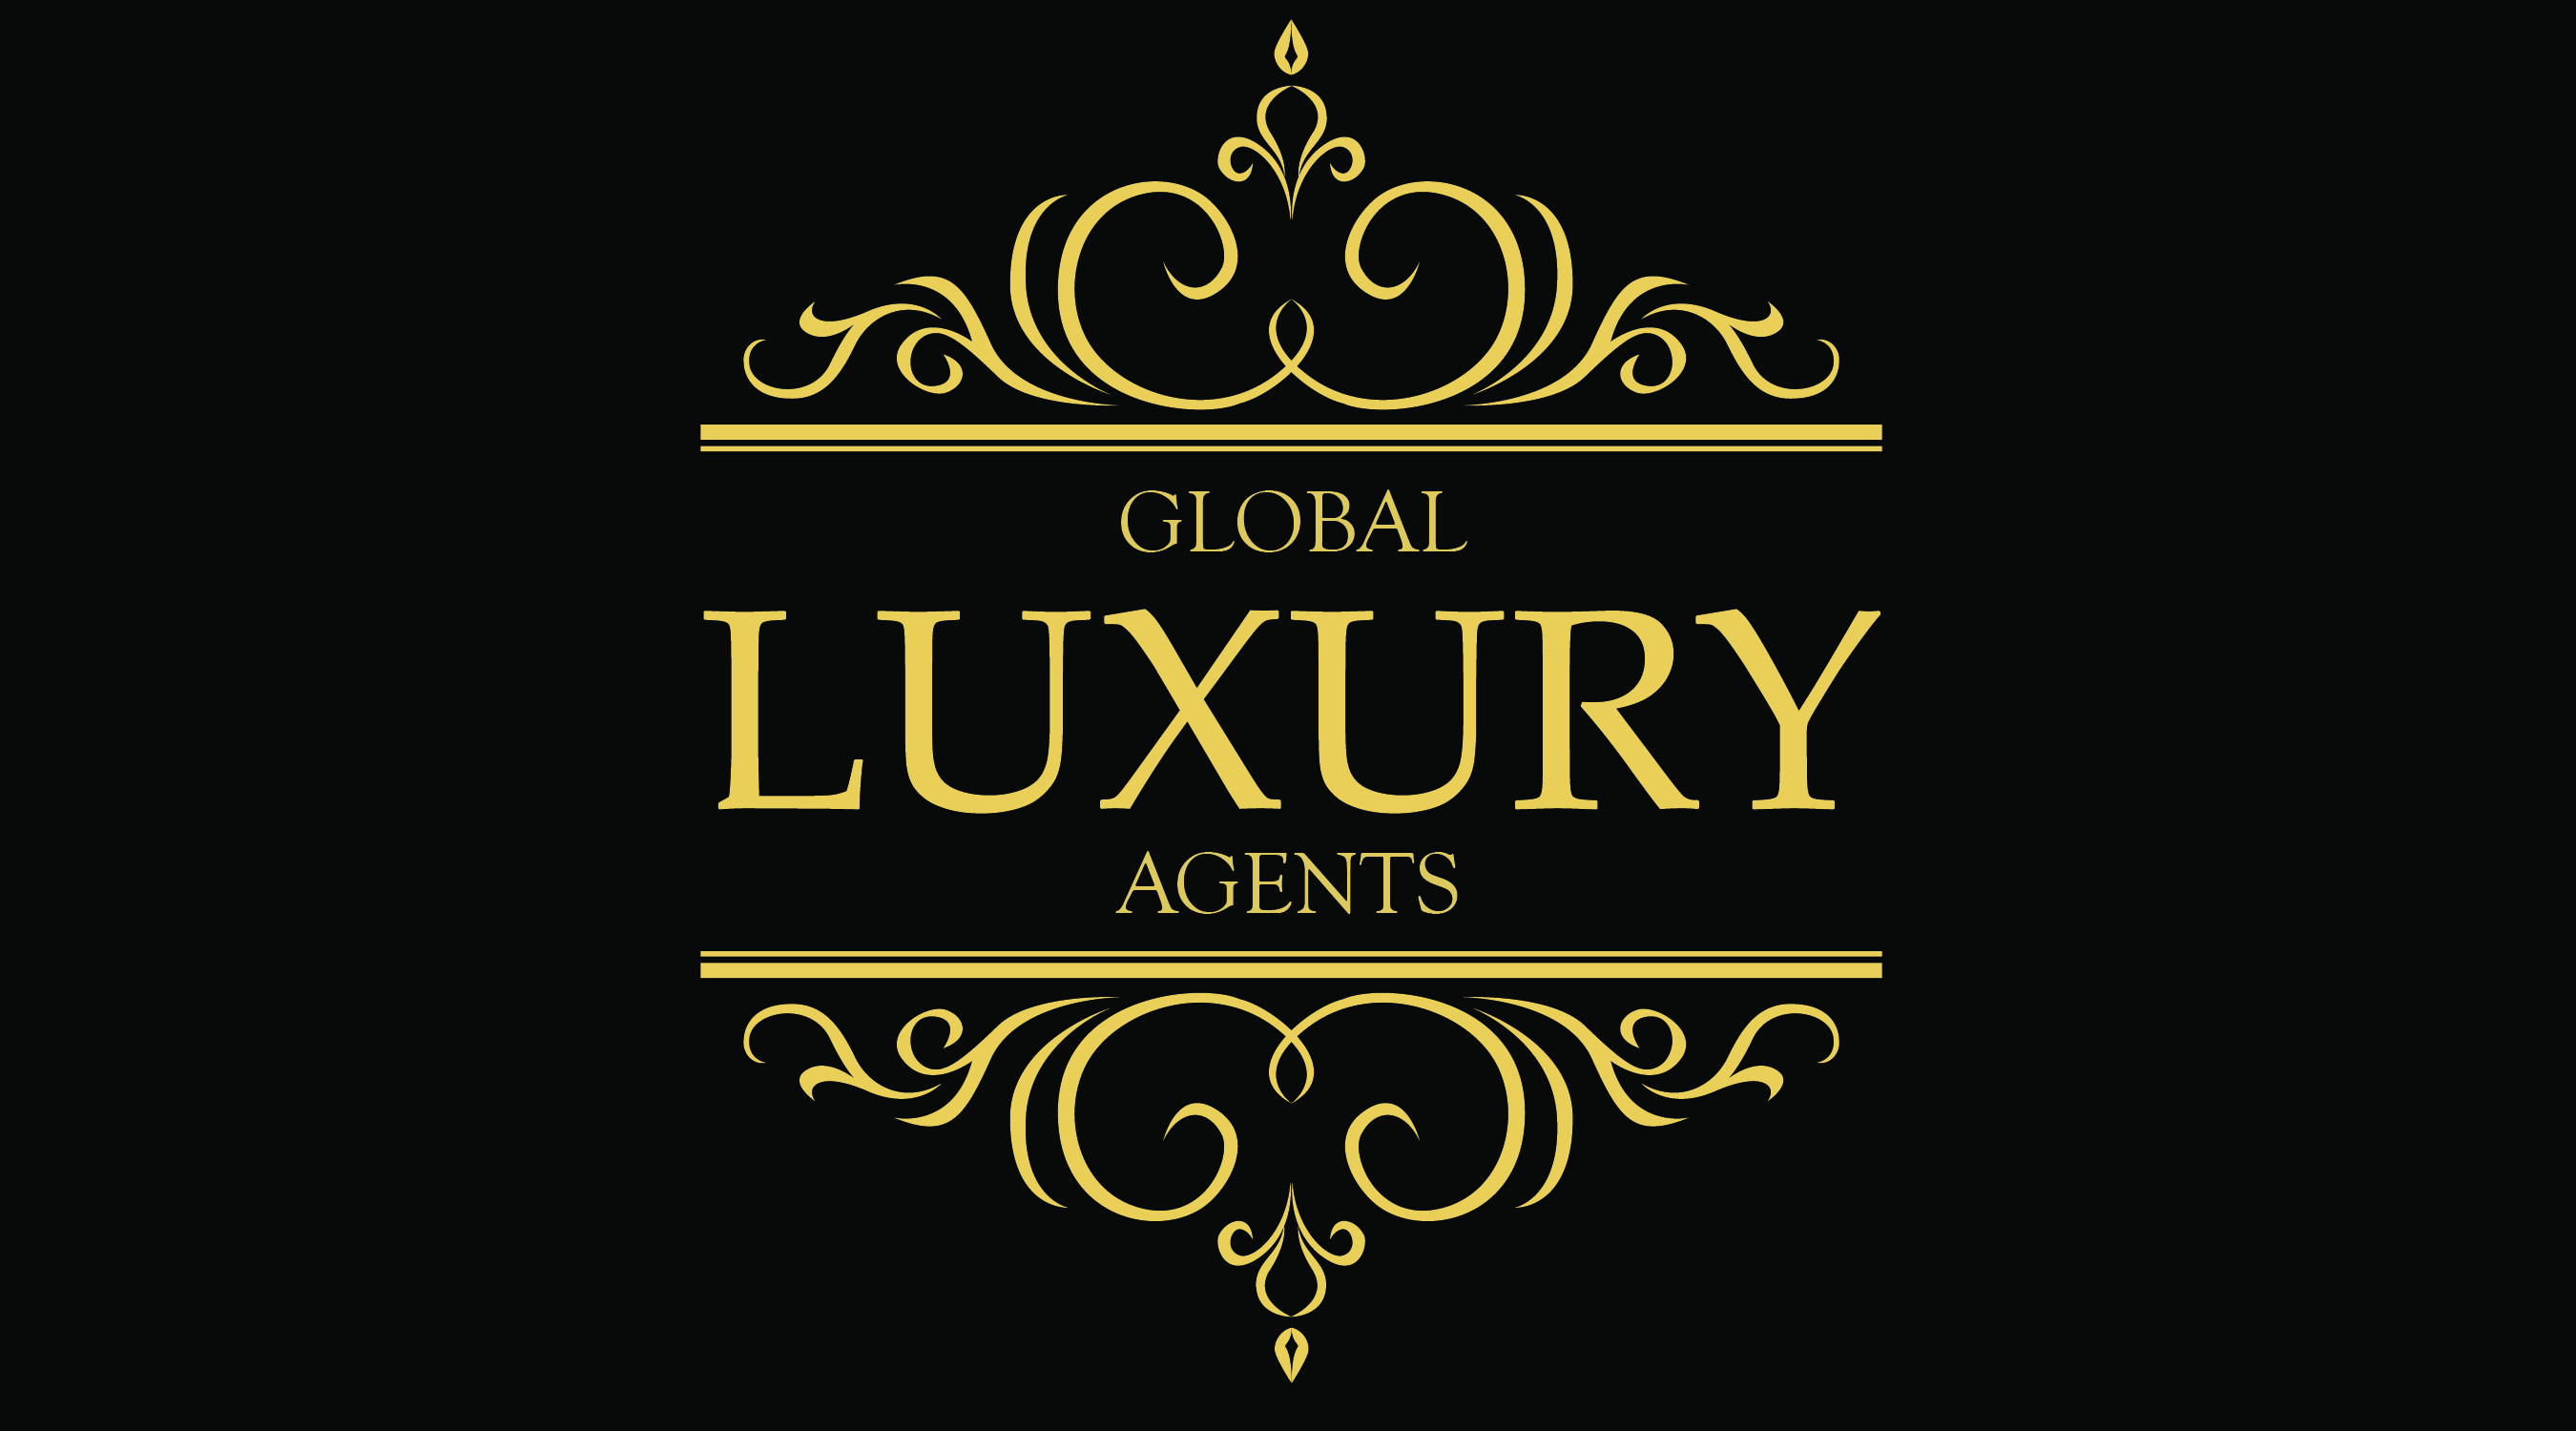 Global Luxury Agents